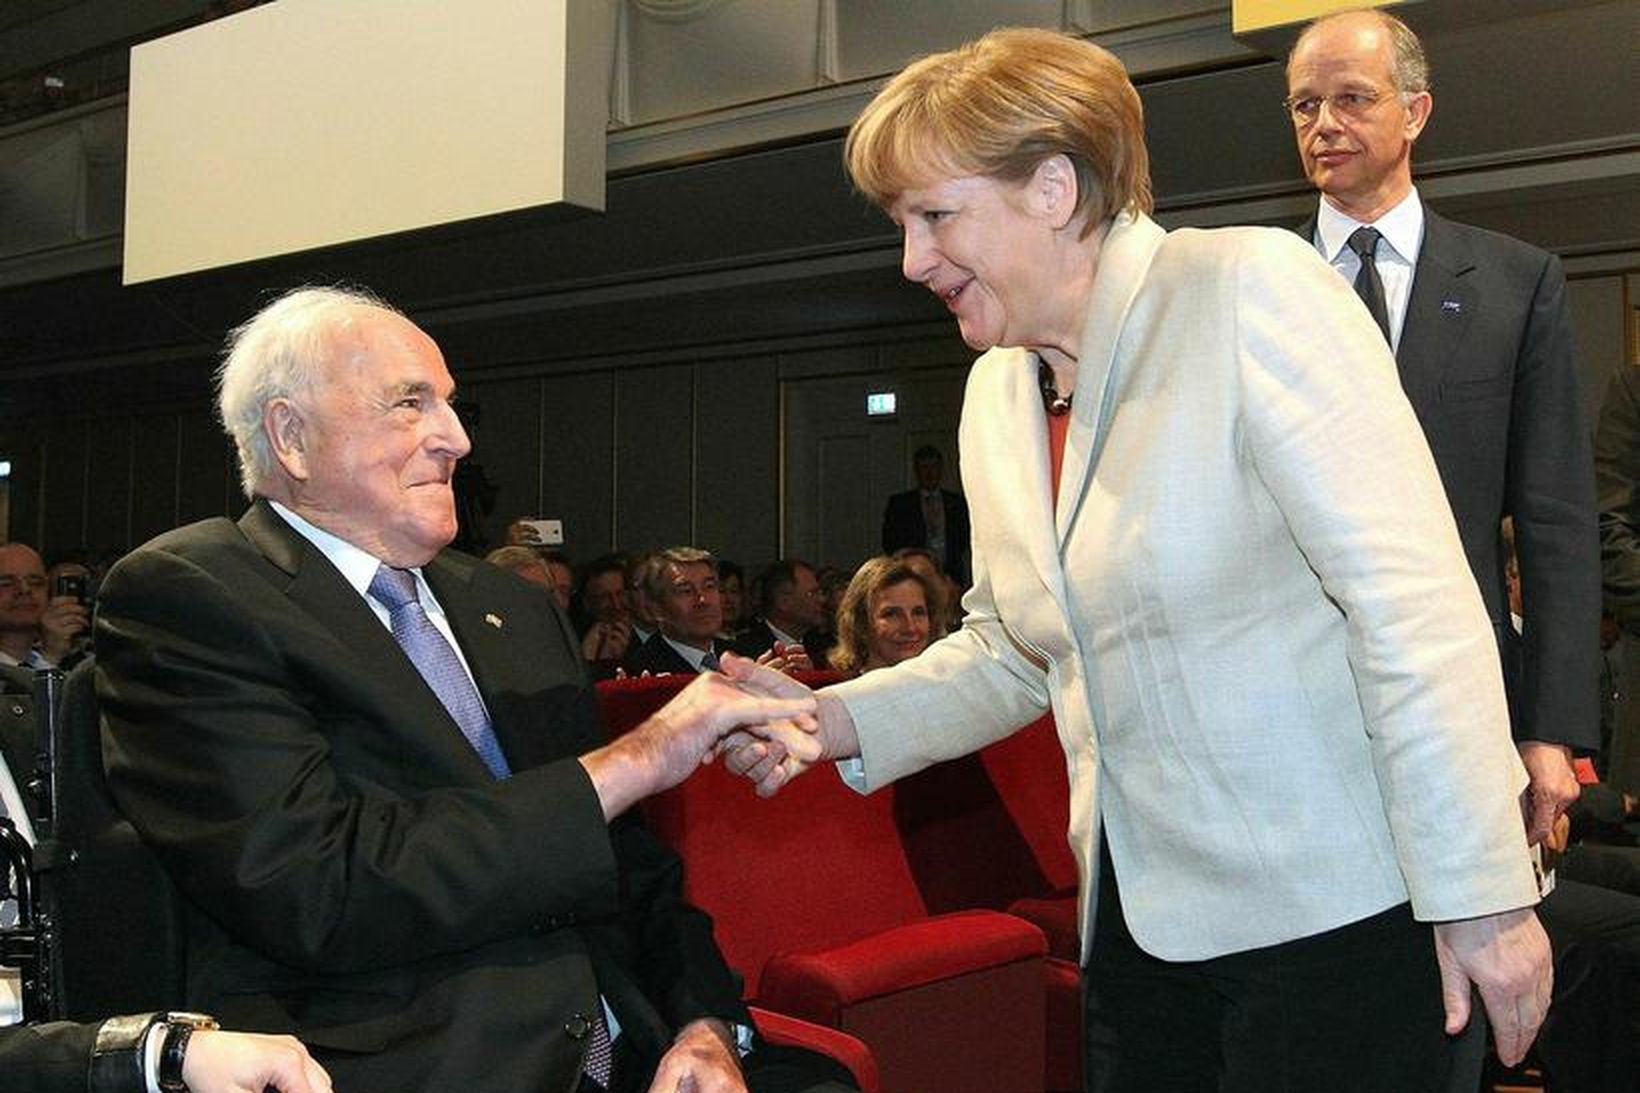 Angela Merkel ásamt Helmut Kohl árið 2015.